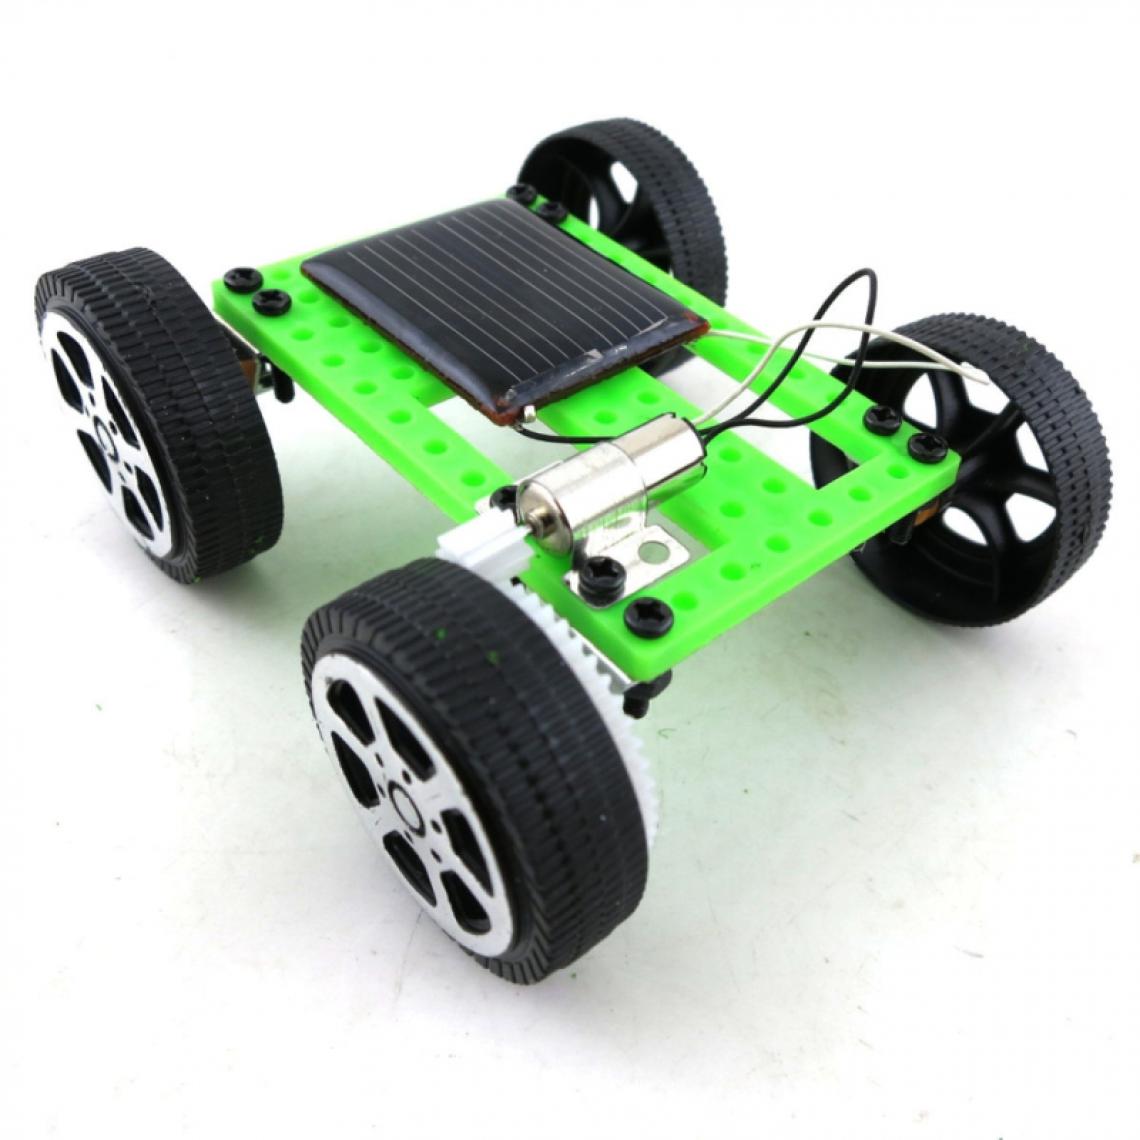 Wewoo - Creative Kids Early Education bricolage énergie solaire expérience de la voiture jouet assemblétaille 3.2x7.5x8cm - Jeux éducatifs